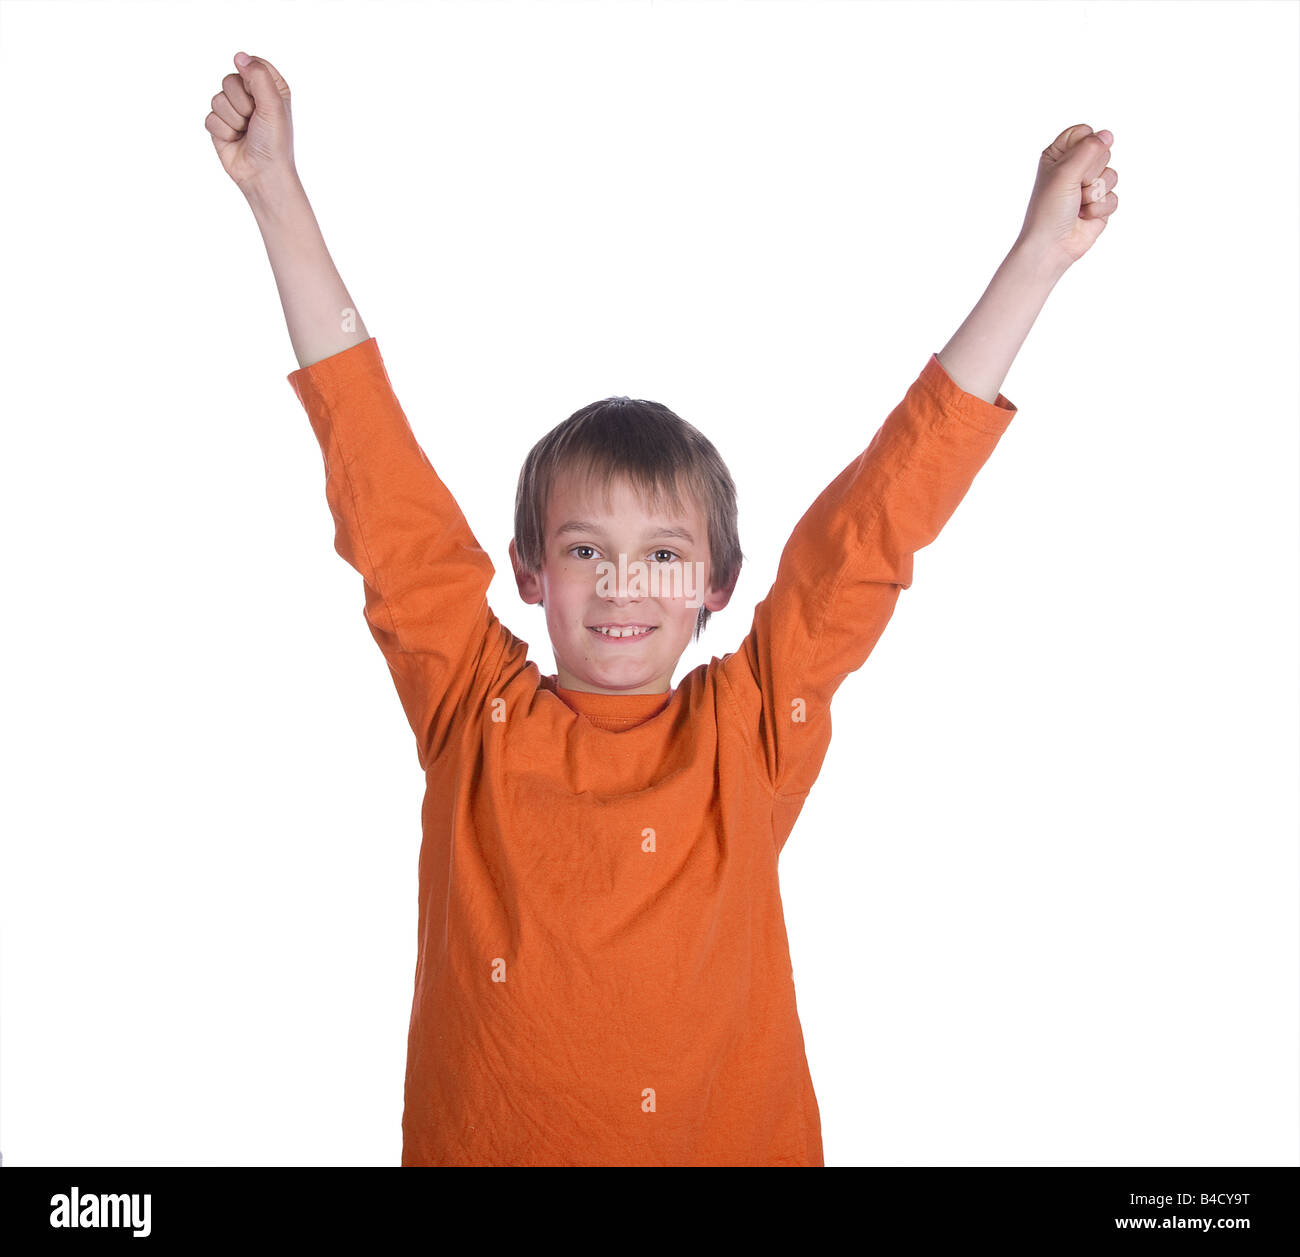 Immagine di un ragazzo con le braccia in alto su sfondo bianco Foto Stock